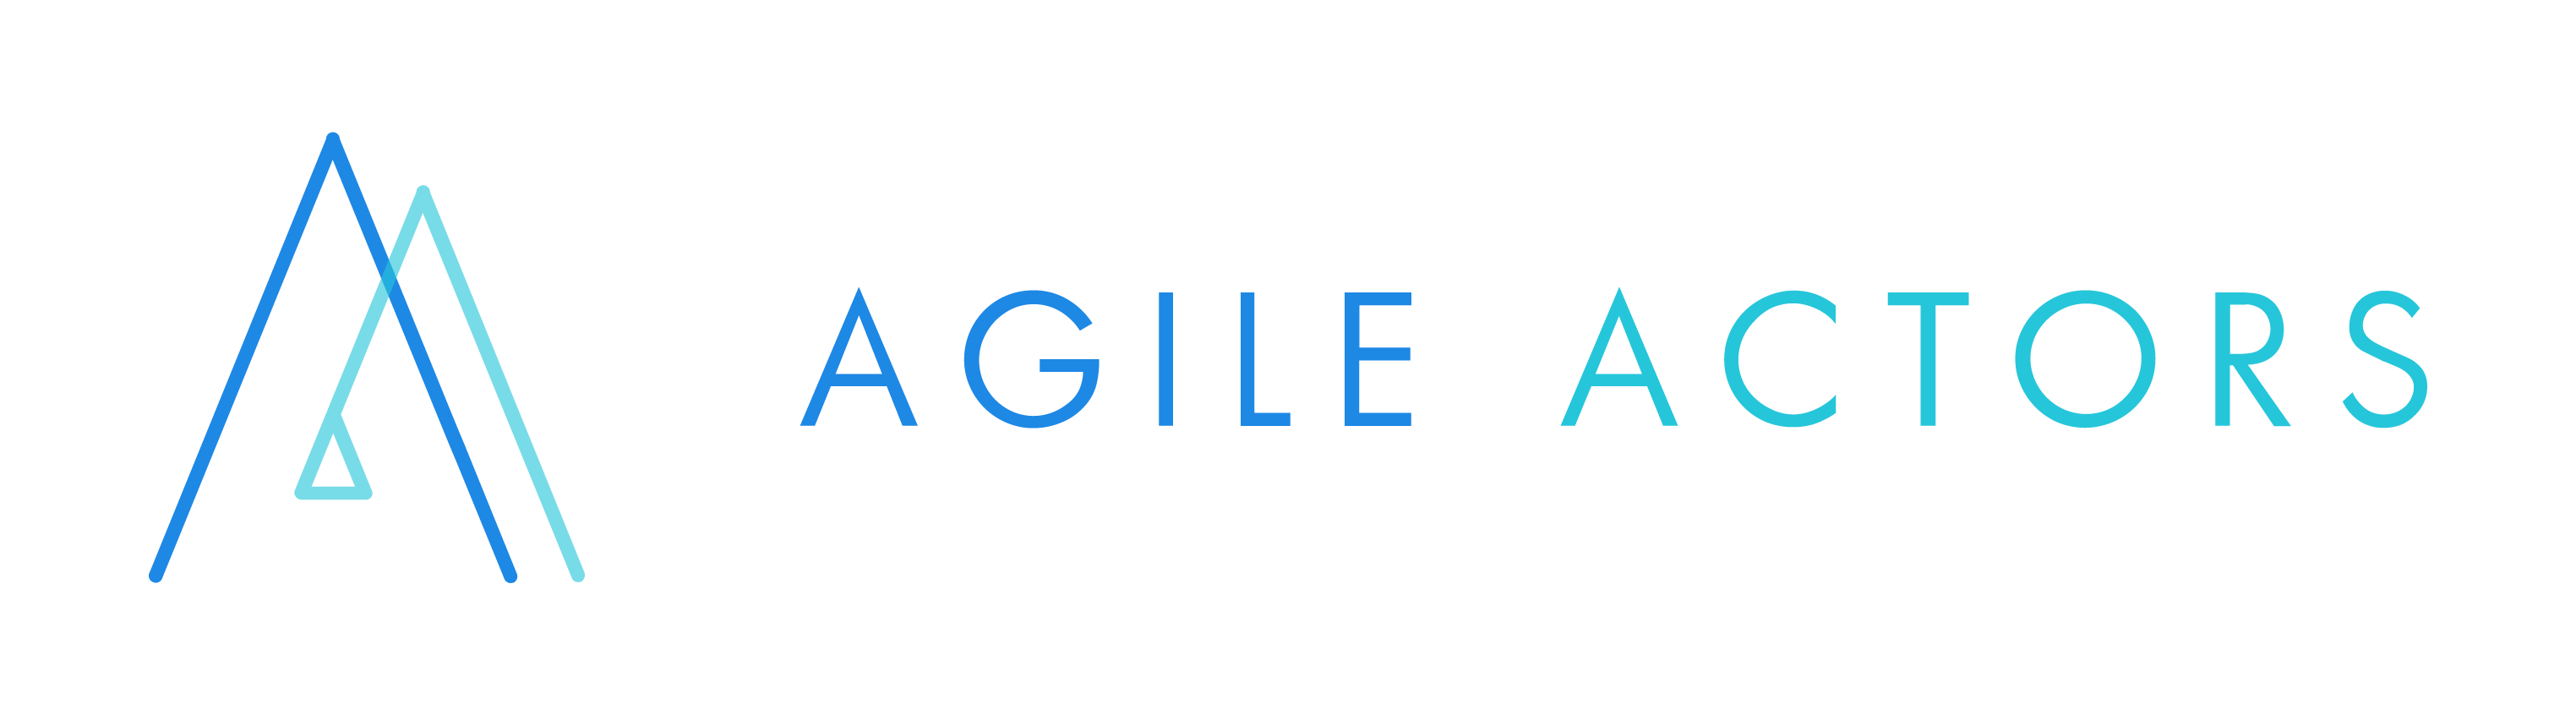 agile_actors